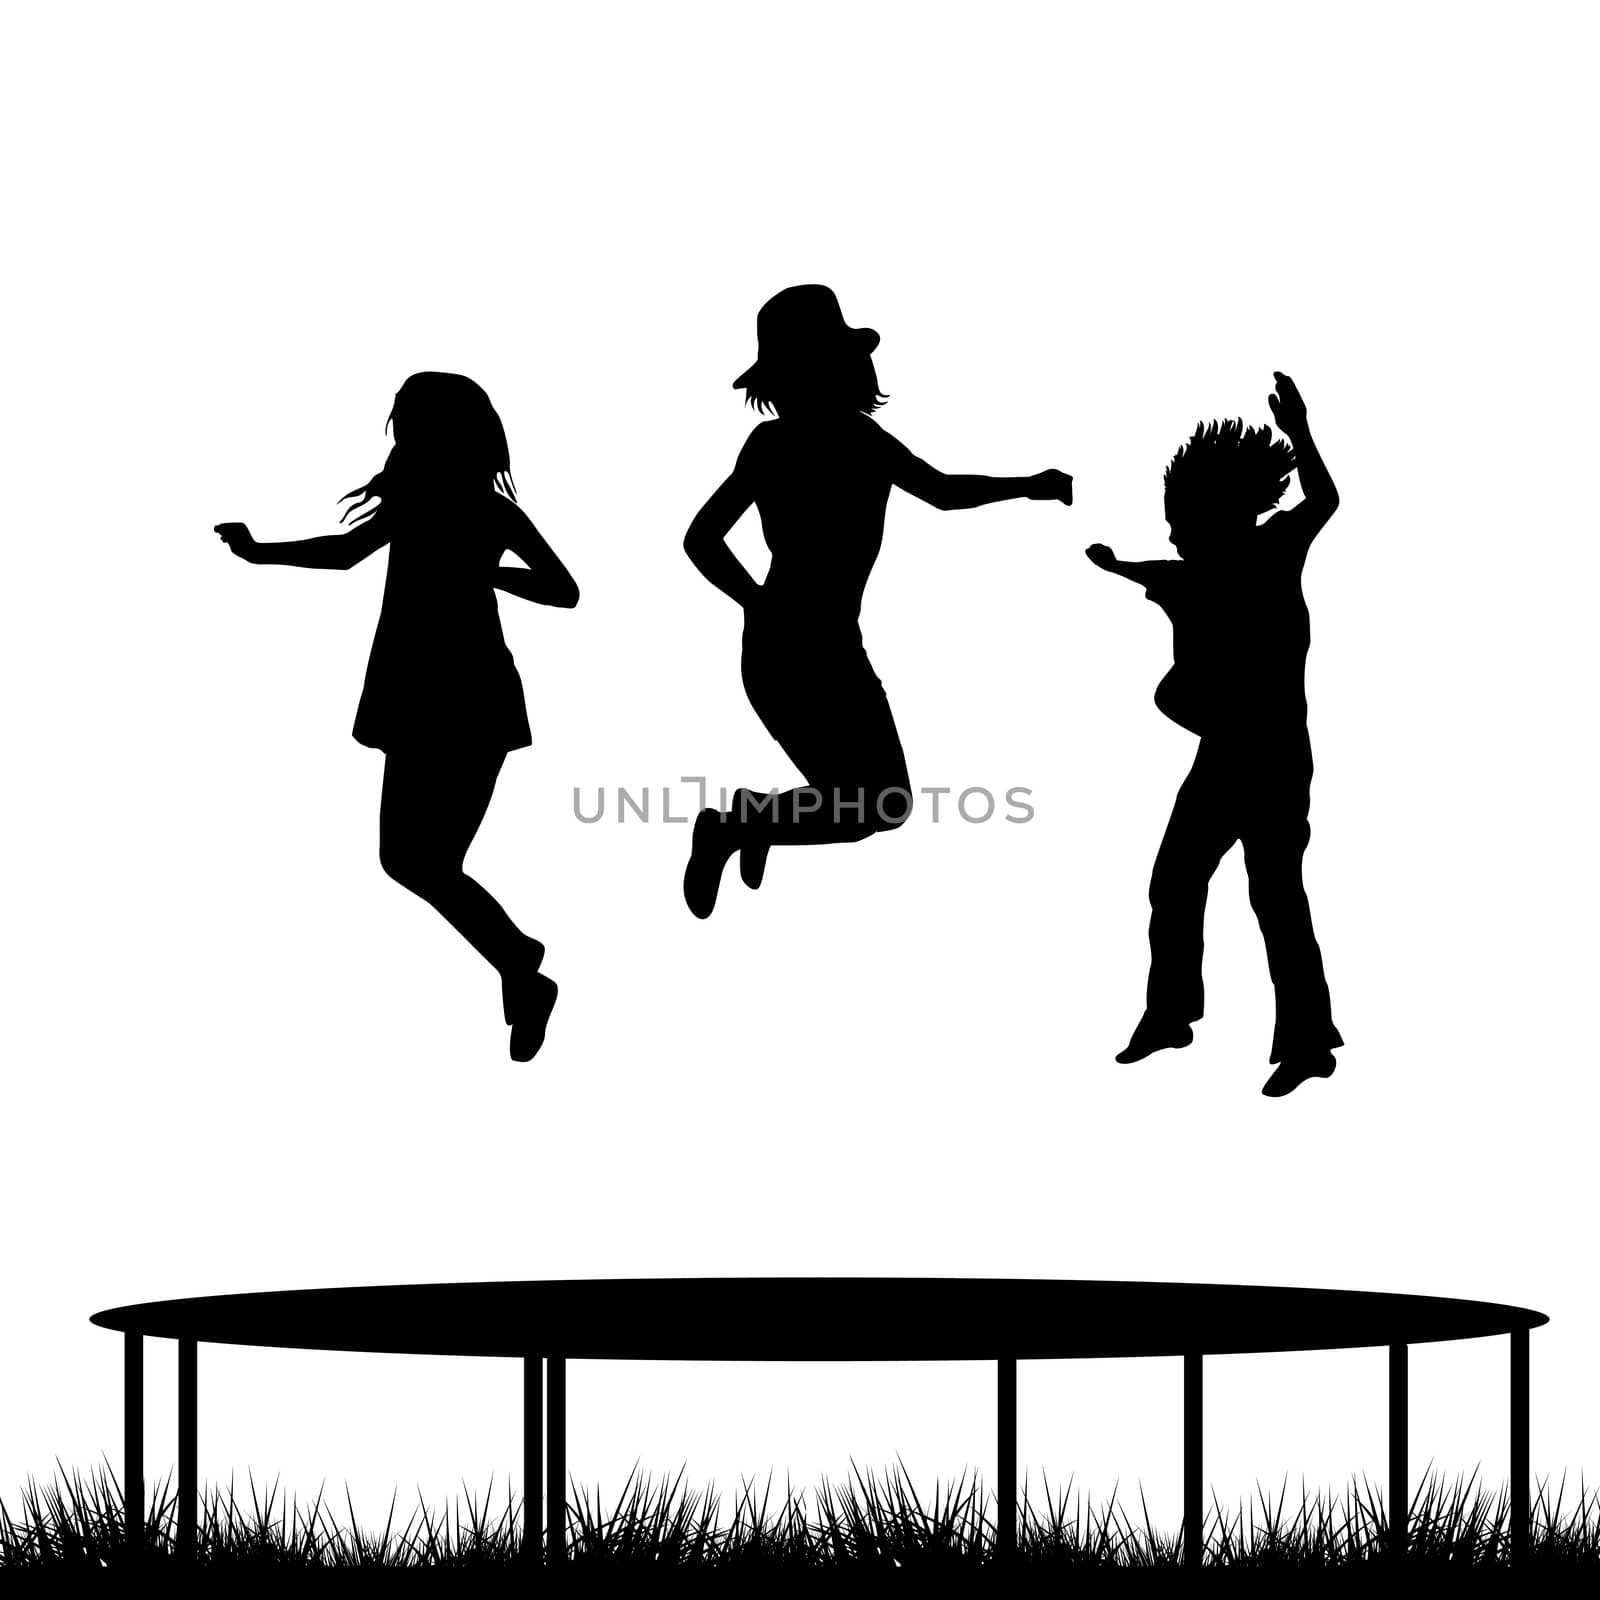 Children silhouettes jumping on garden trampoline